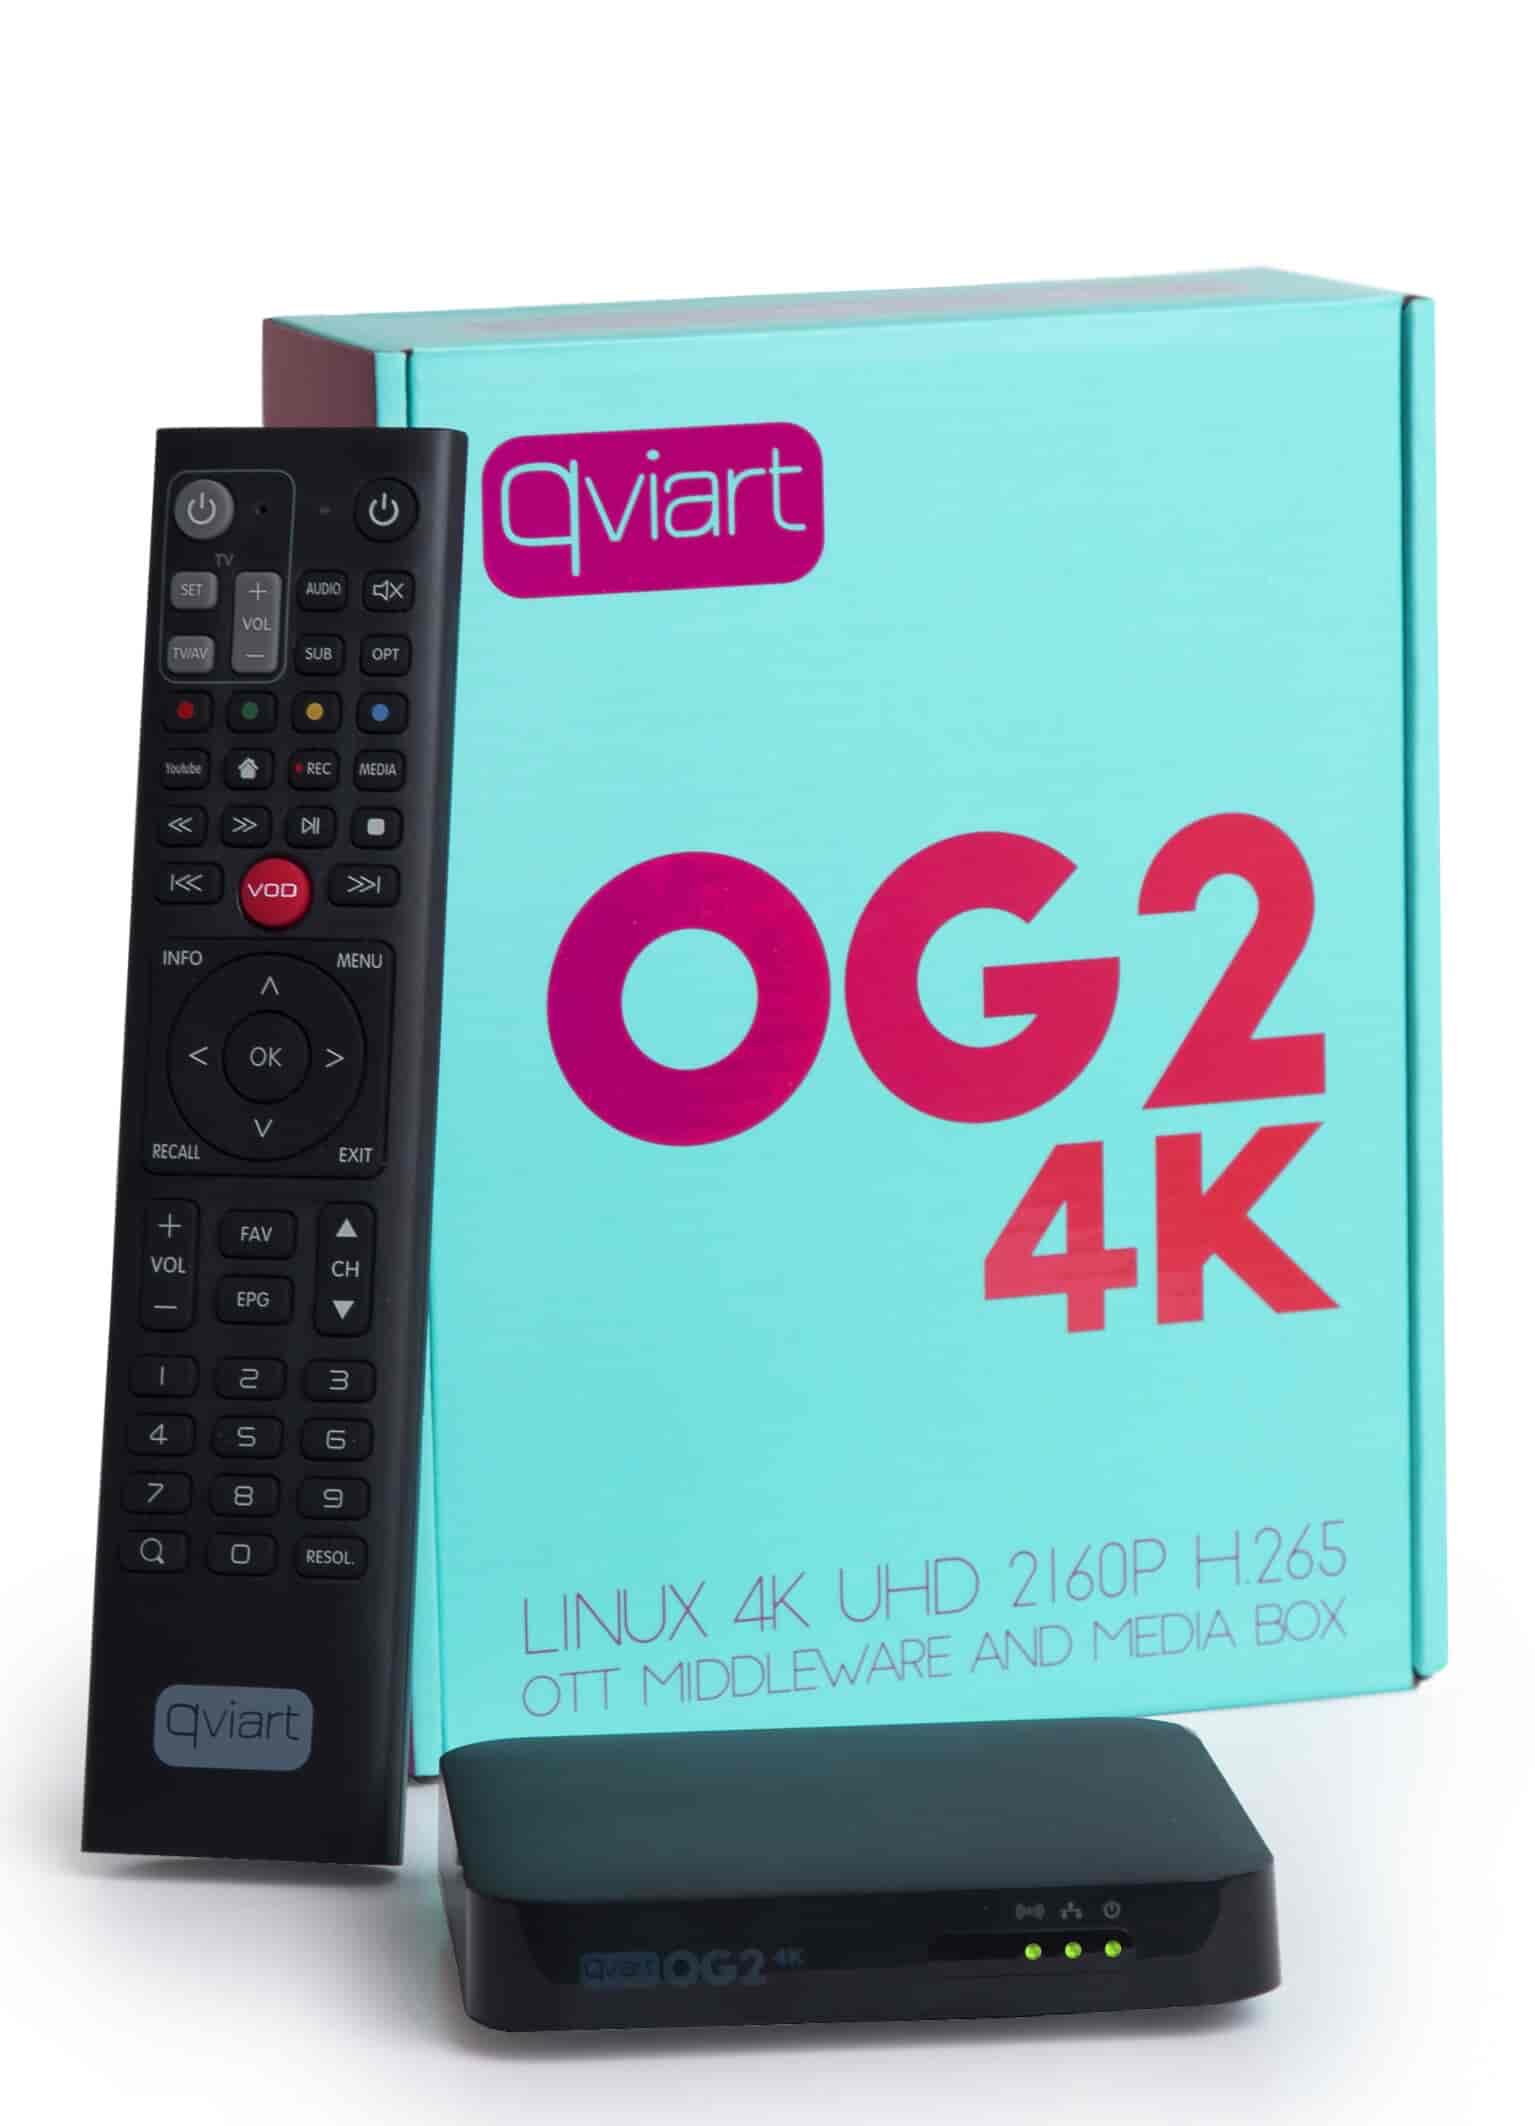 IPTV VOD Media player OG24K - fast - OG24K IPTV Boks multimediaplayer Qviart 4K UHD 2160P H.265